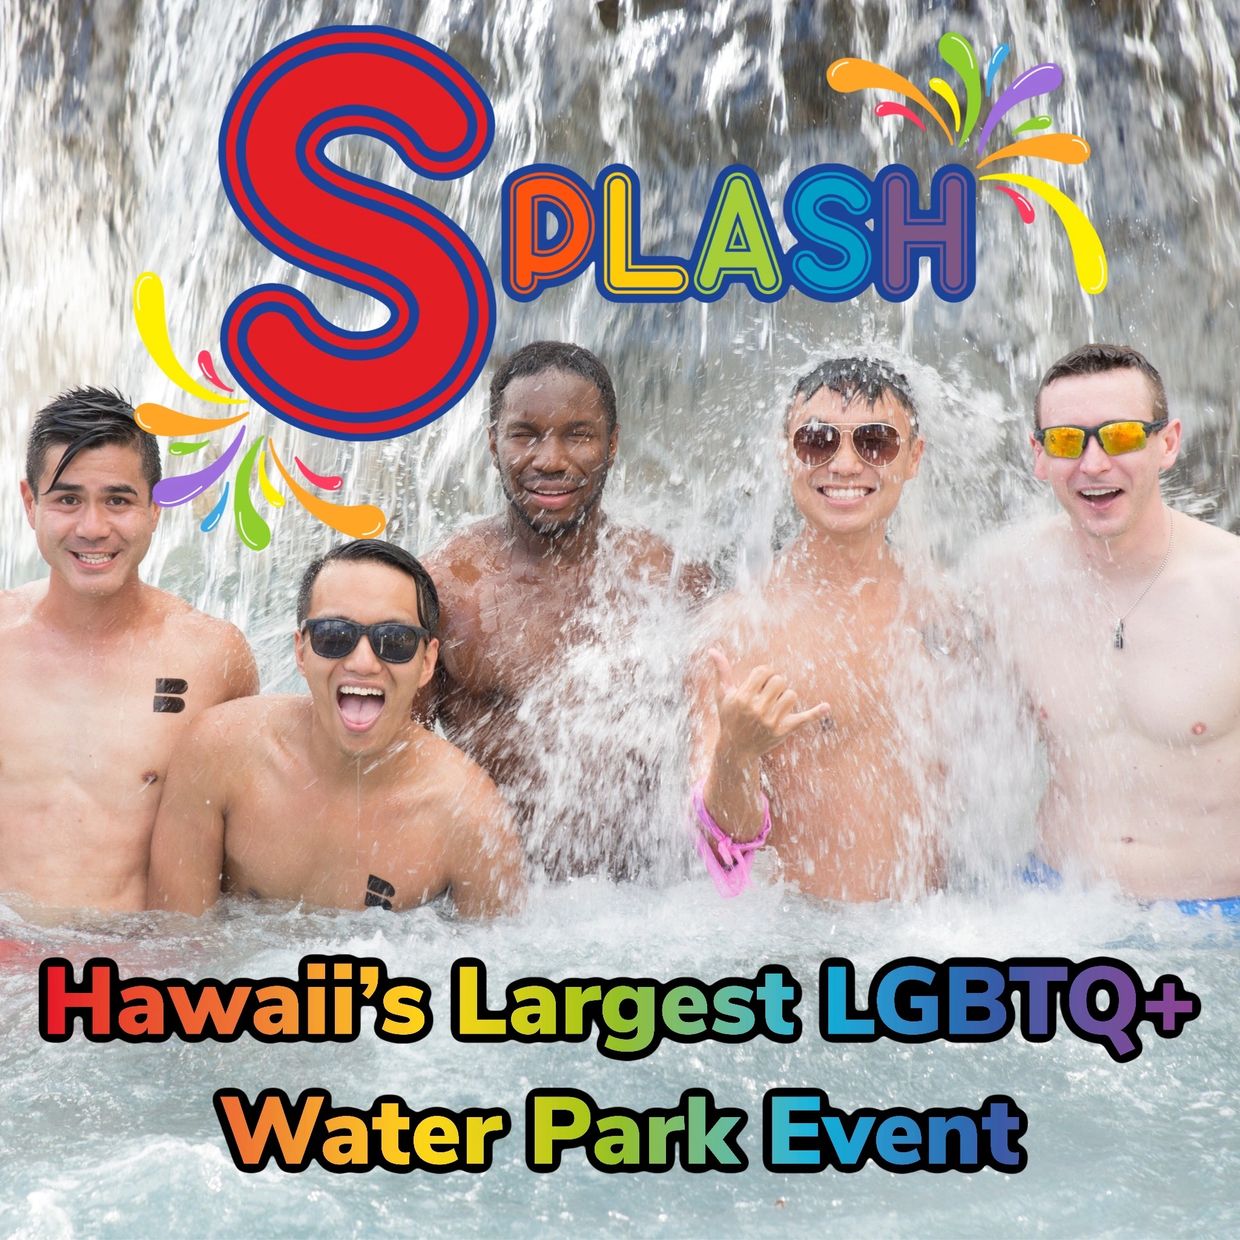 Splash Party Hawaii, Splash Gay Party, Hawaii Splash LGBT Party, Wet N Wild Hawaii, Oahu, Gay Event